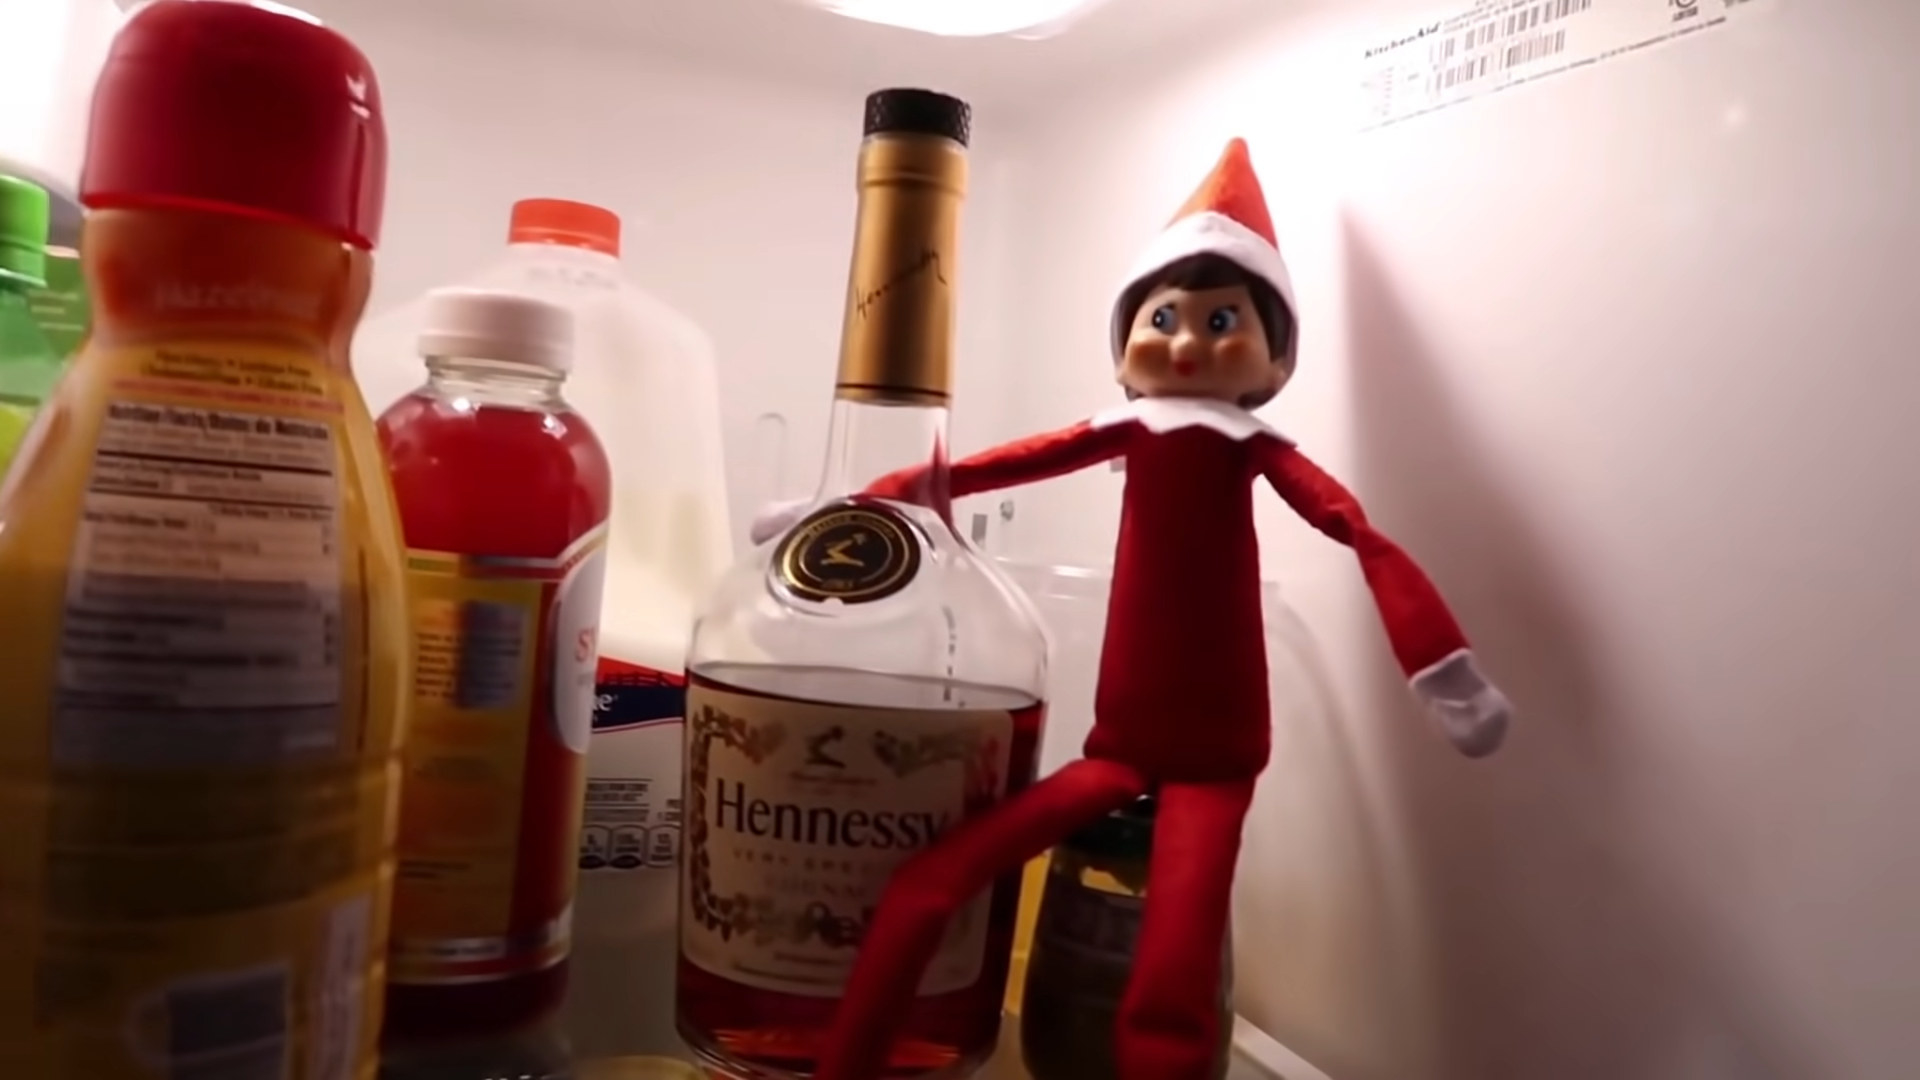 toy elf in the fridge